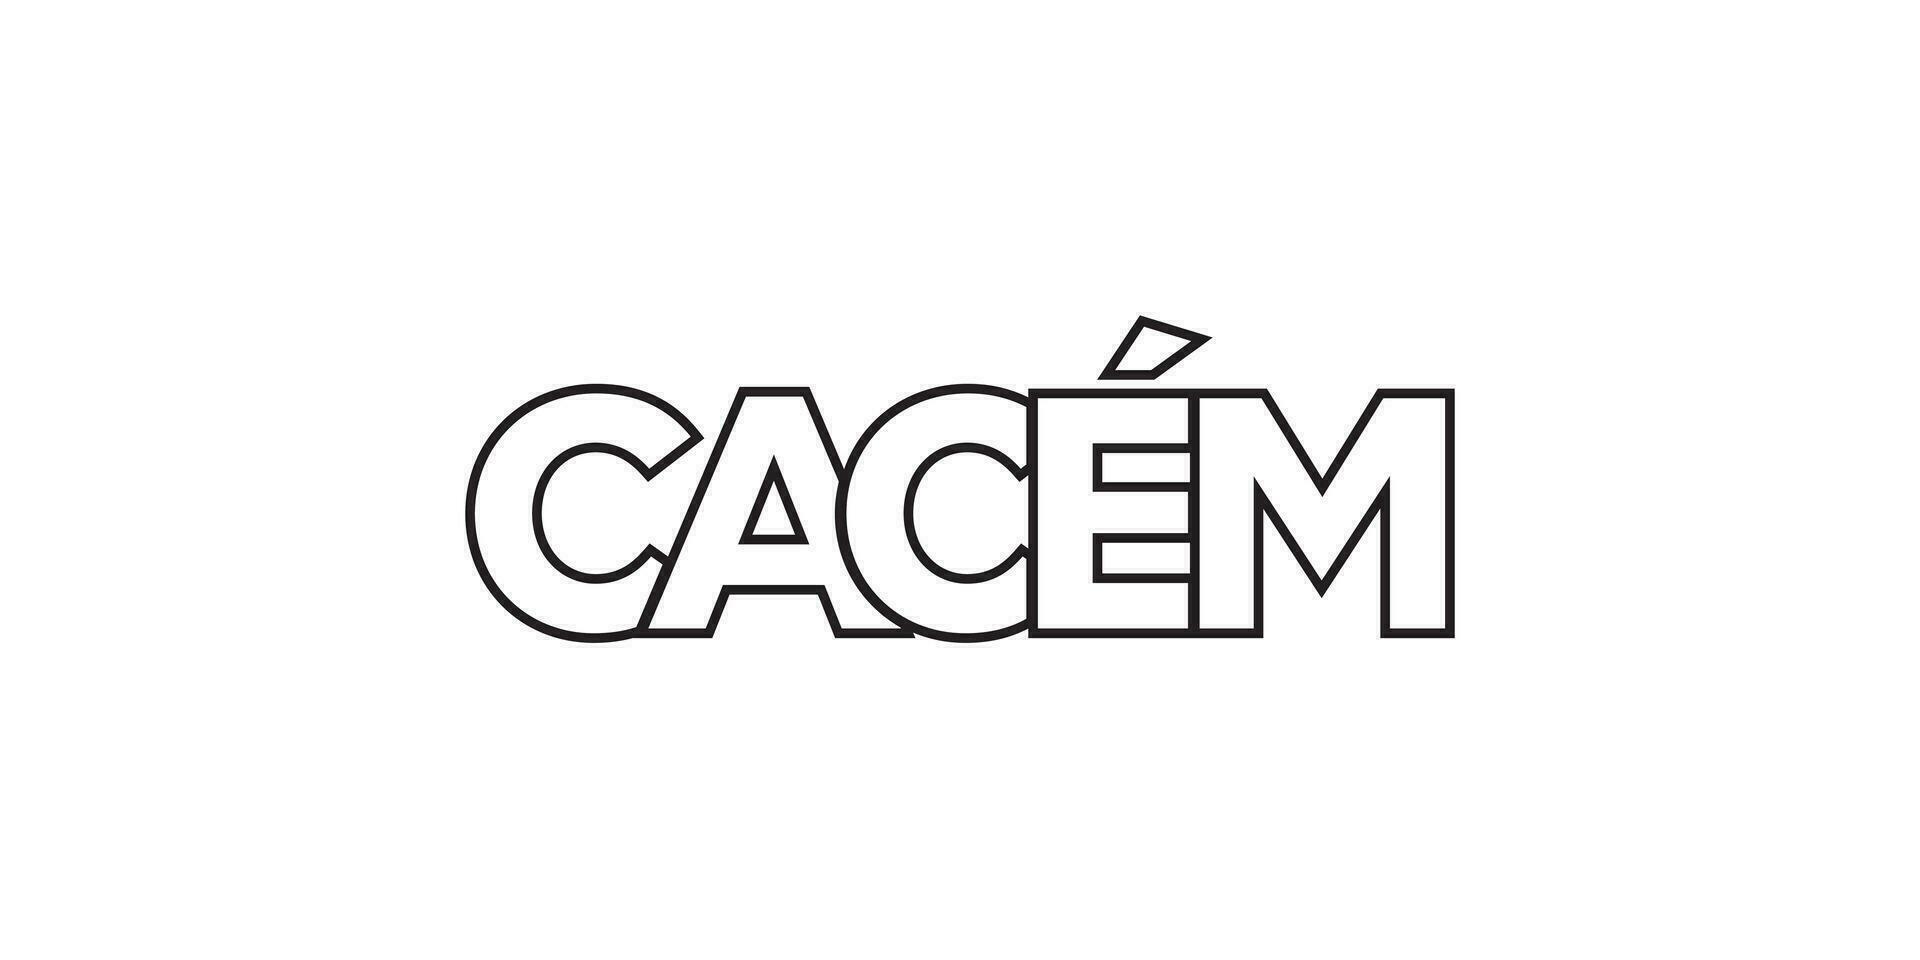 cacem in de Portugal embleem. de ontwerp Kenmerken een meetkundig stijl, vector illustratie met stoutmoedig typografie in een modern lettertype. de grafisch leuze belettering.